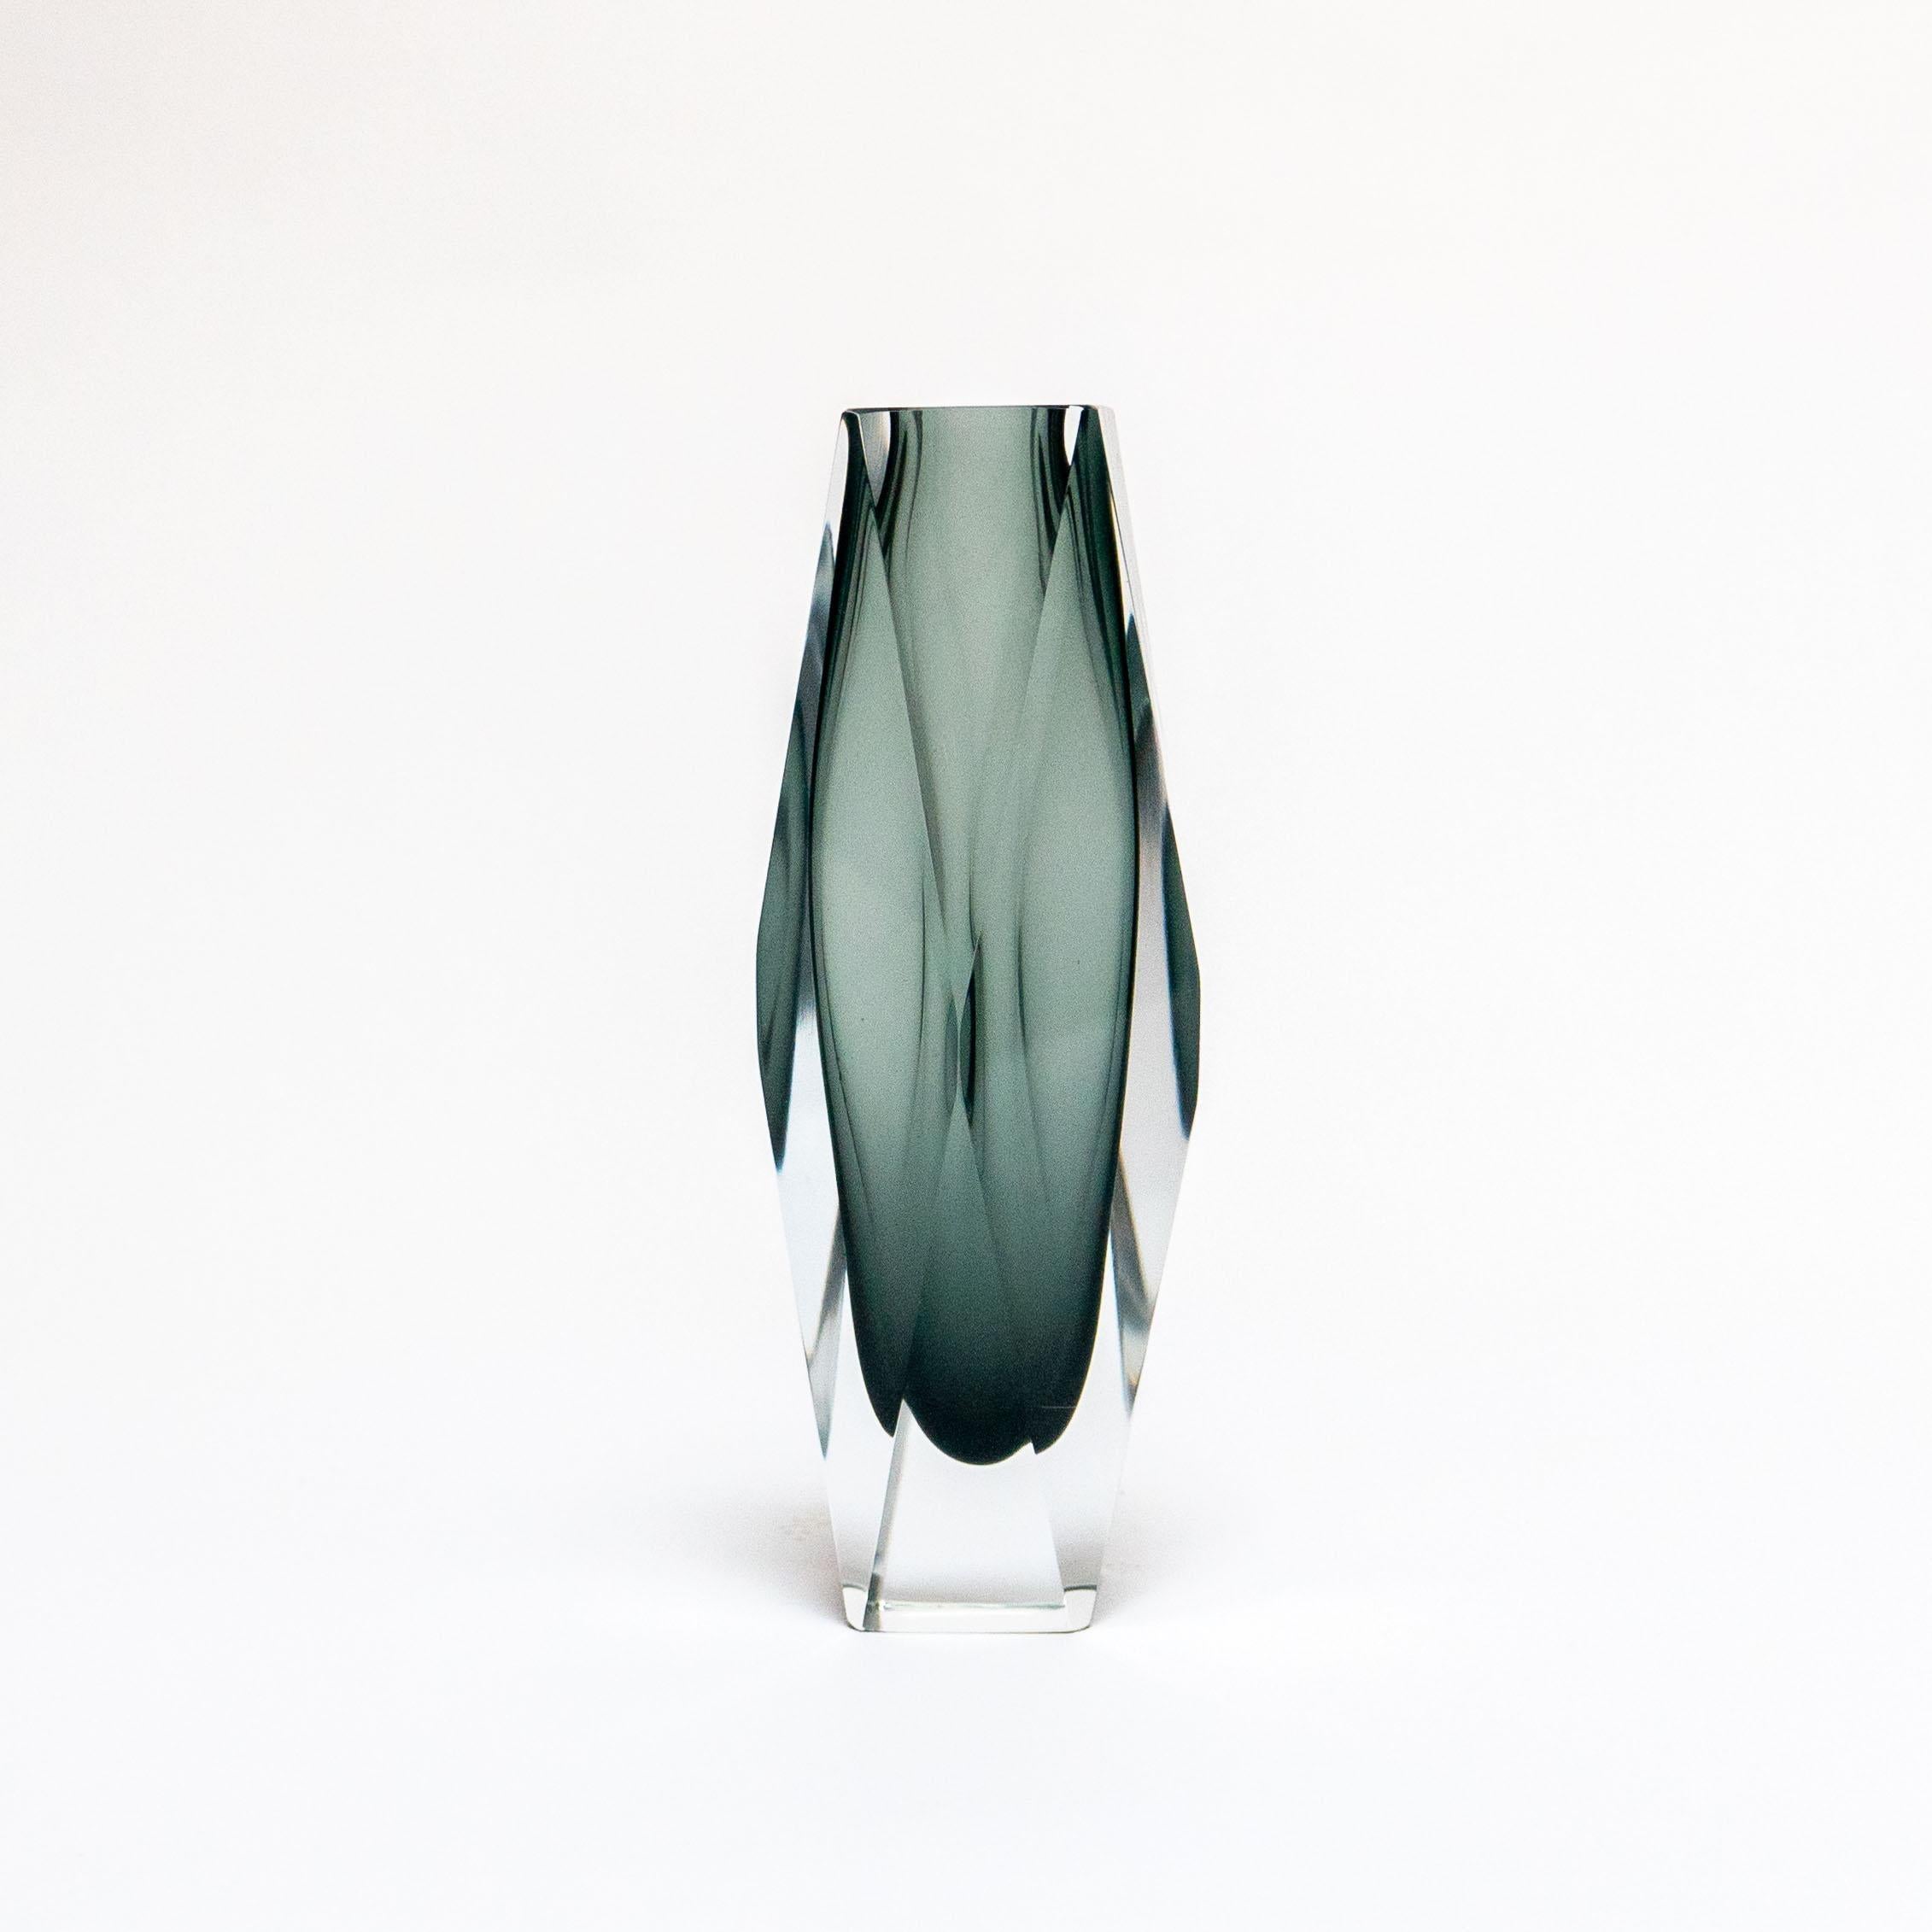 Universellement considéré comme l'un des créateurs les plus prolifiques et les plus compétents de vases et d'objets en verre de Murano, Flavio Poli s'est associé à certains des producteurs de verre les plus influents et les plus compétents de Murano